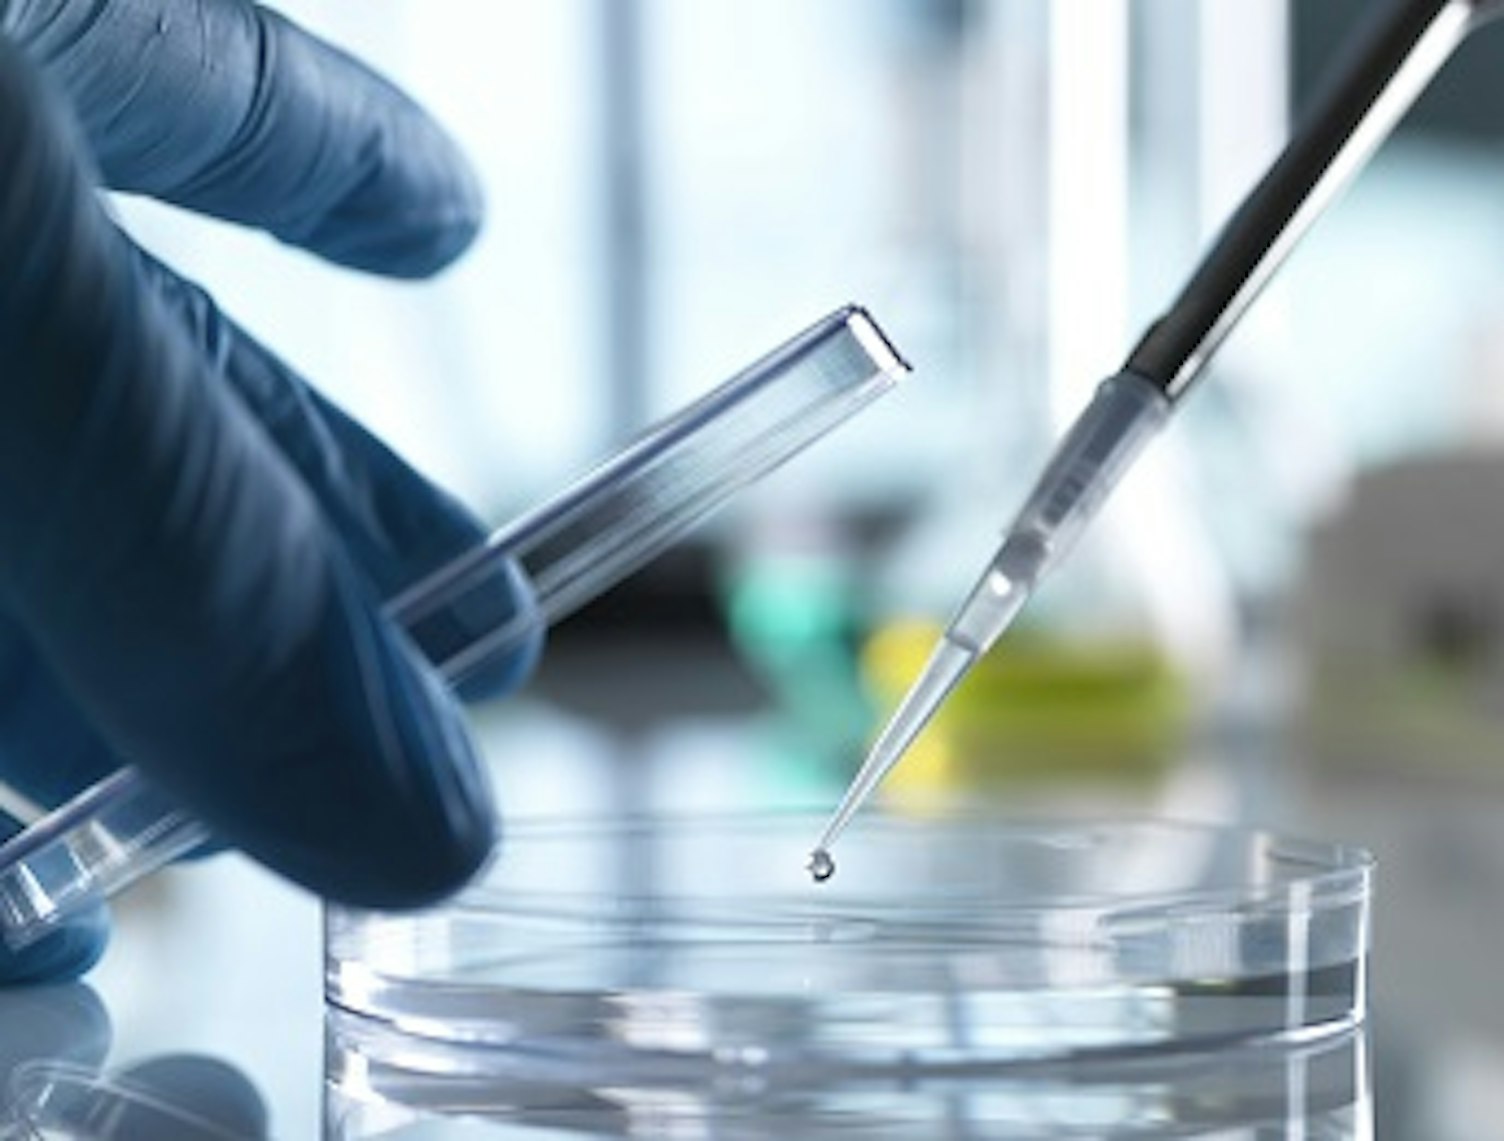 orig scientist pipetting sample into petri dish in laboratory